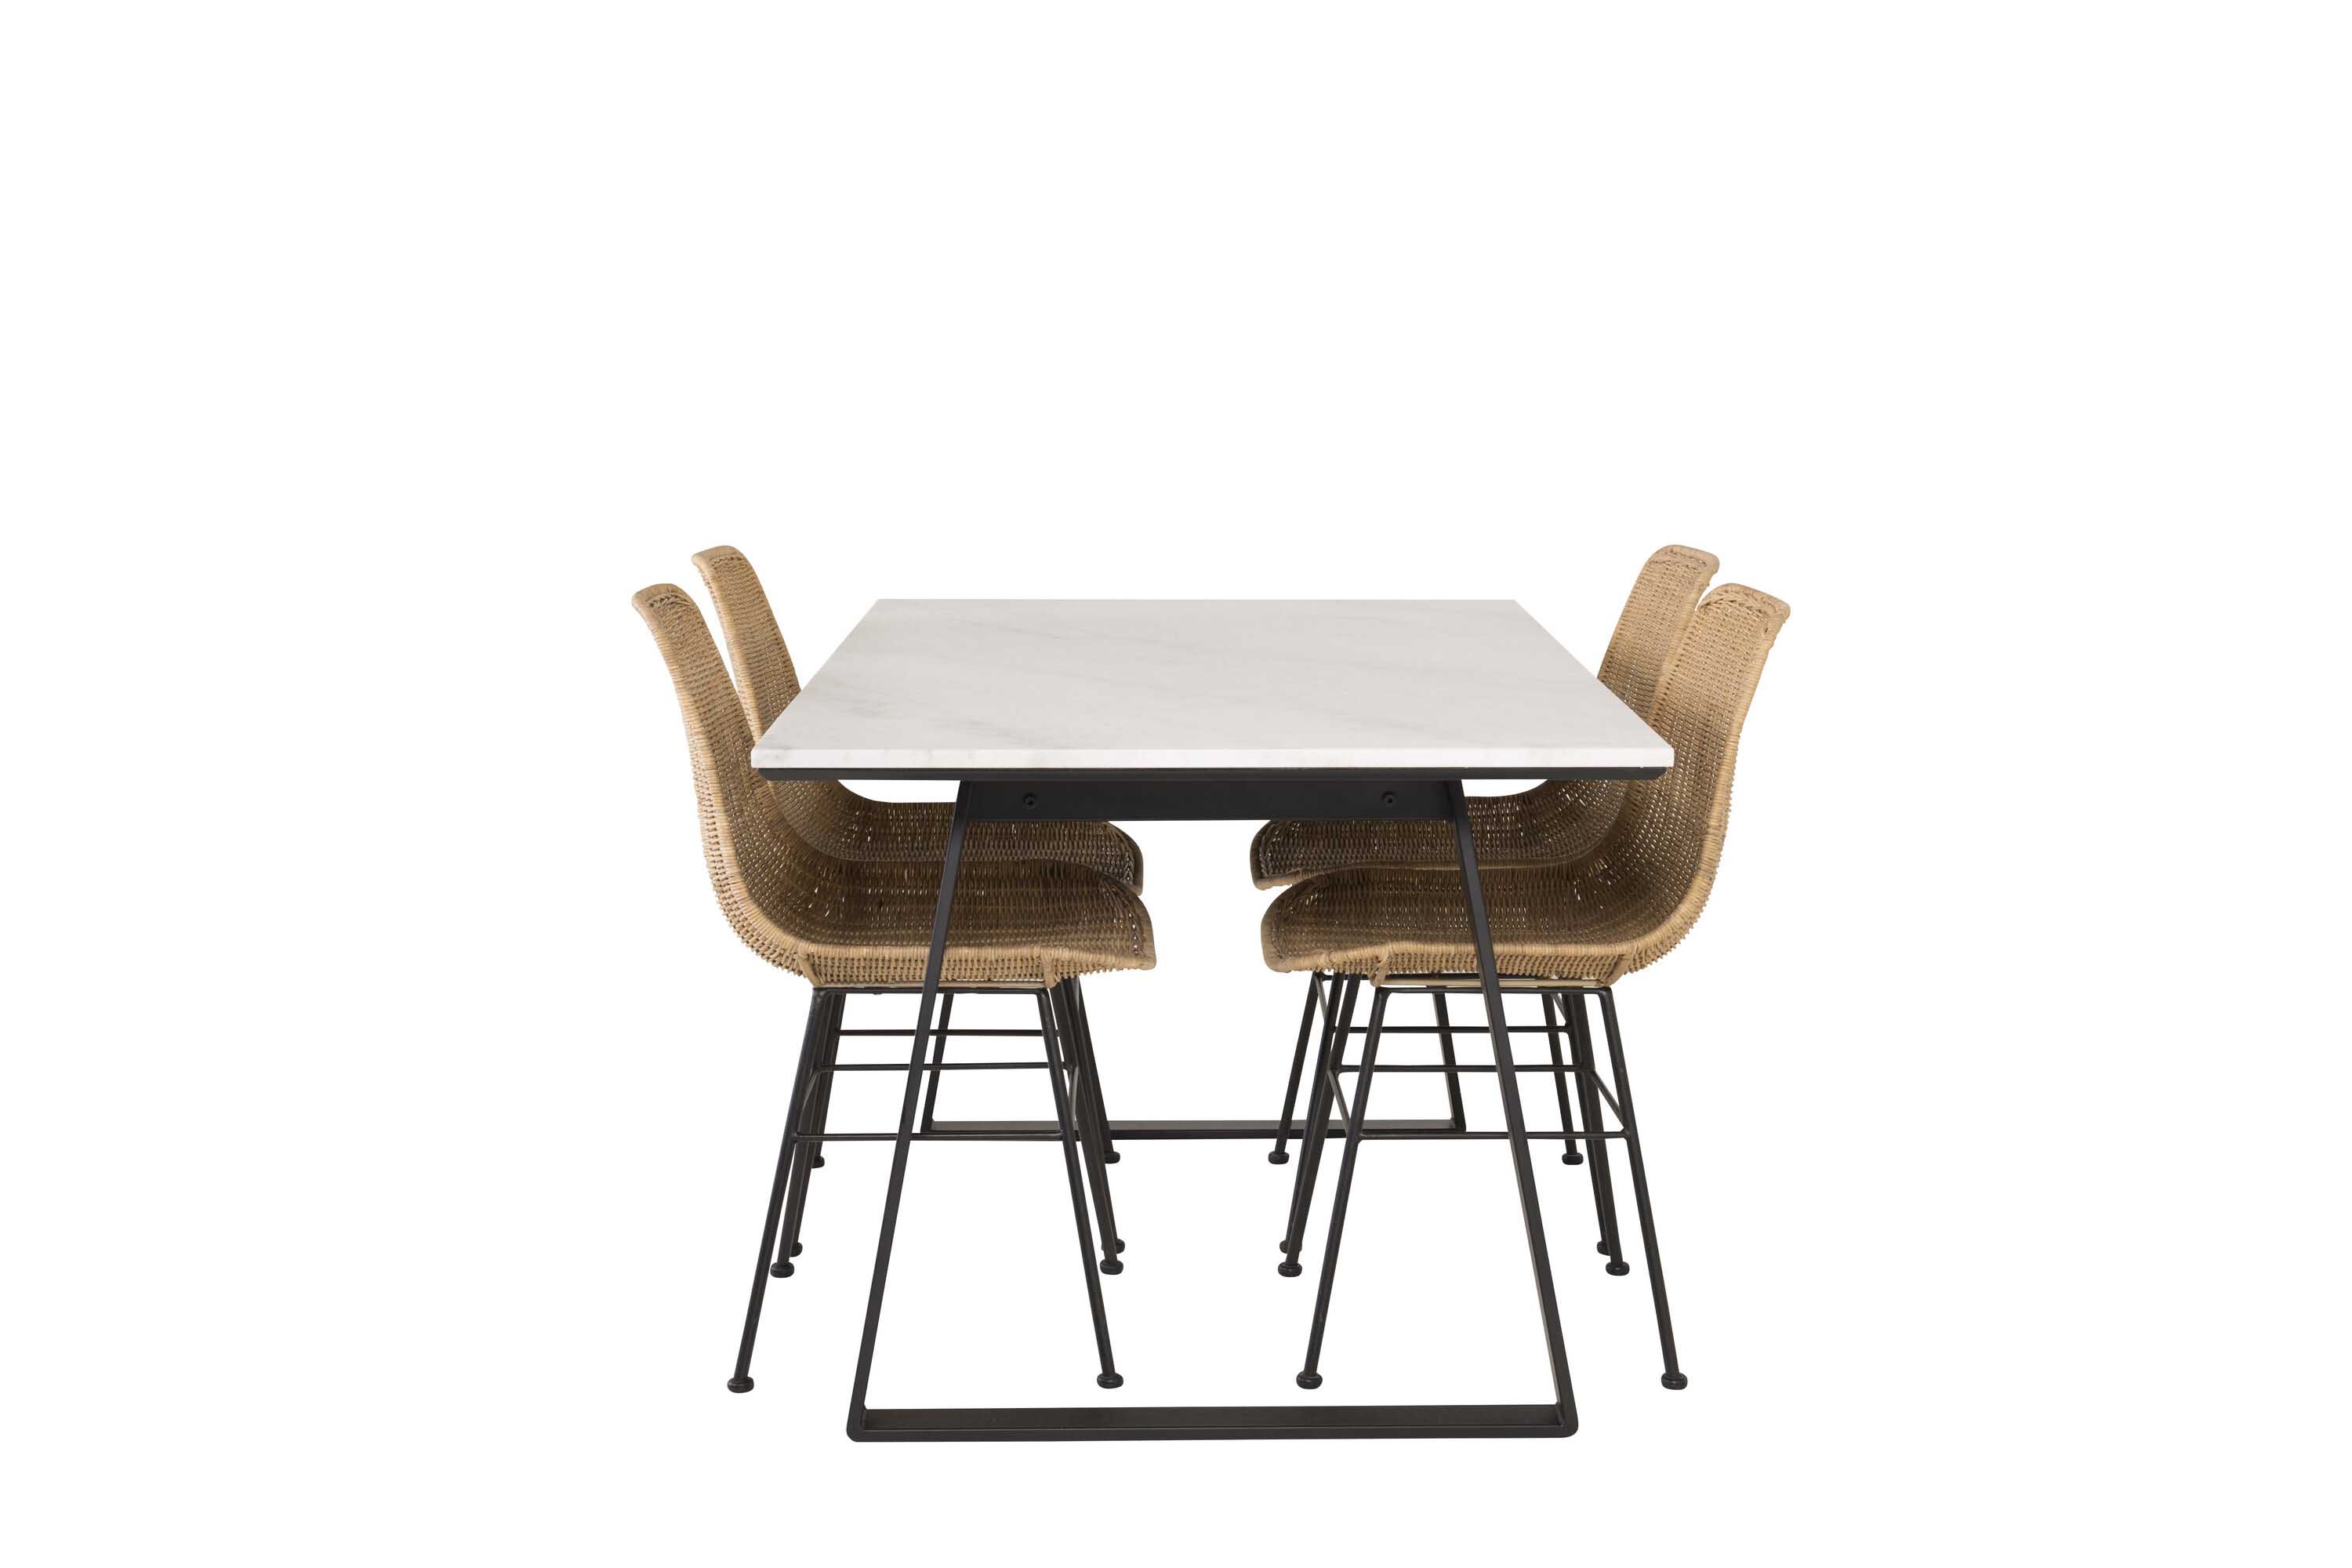 Venture Design Estelle & Bali spisebordssæt Hvid/sort 4 st stole & borde 140 x 90 cm